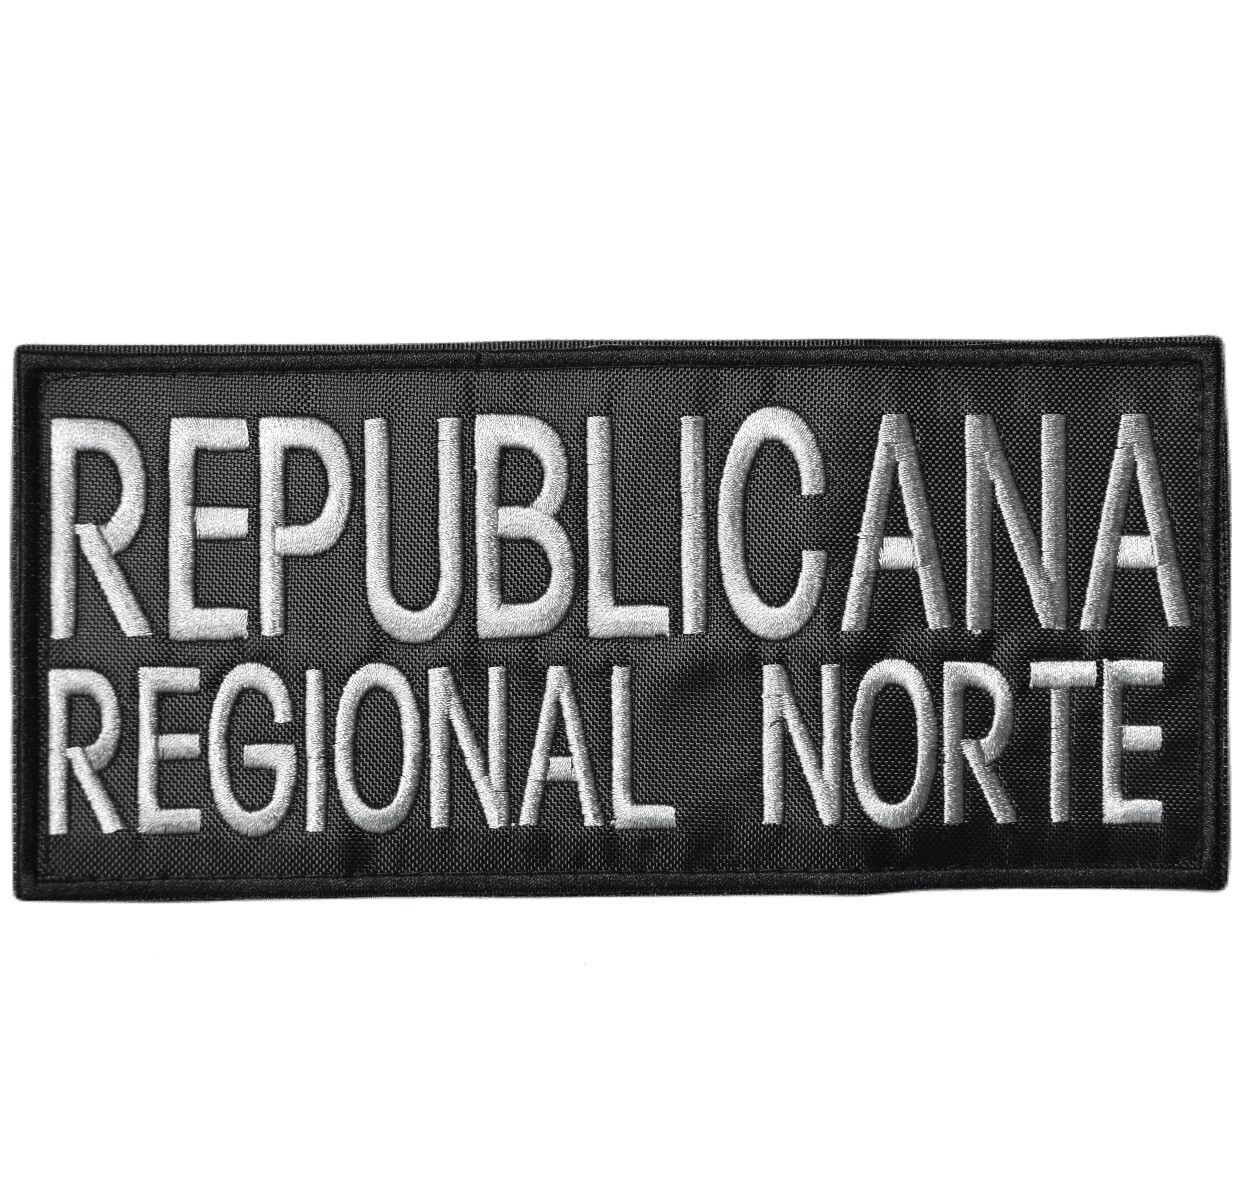 Parche bordado para chaleco - Republicana Regional Norte 